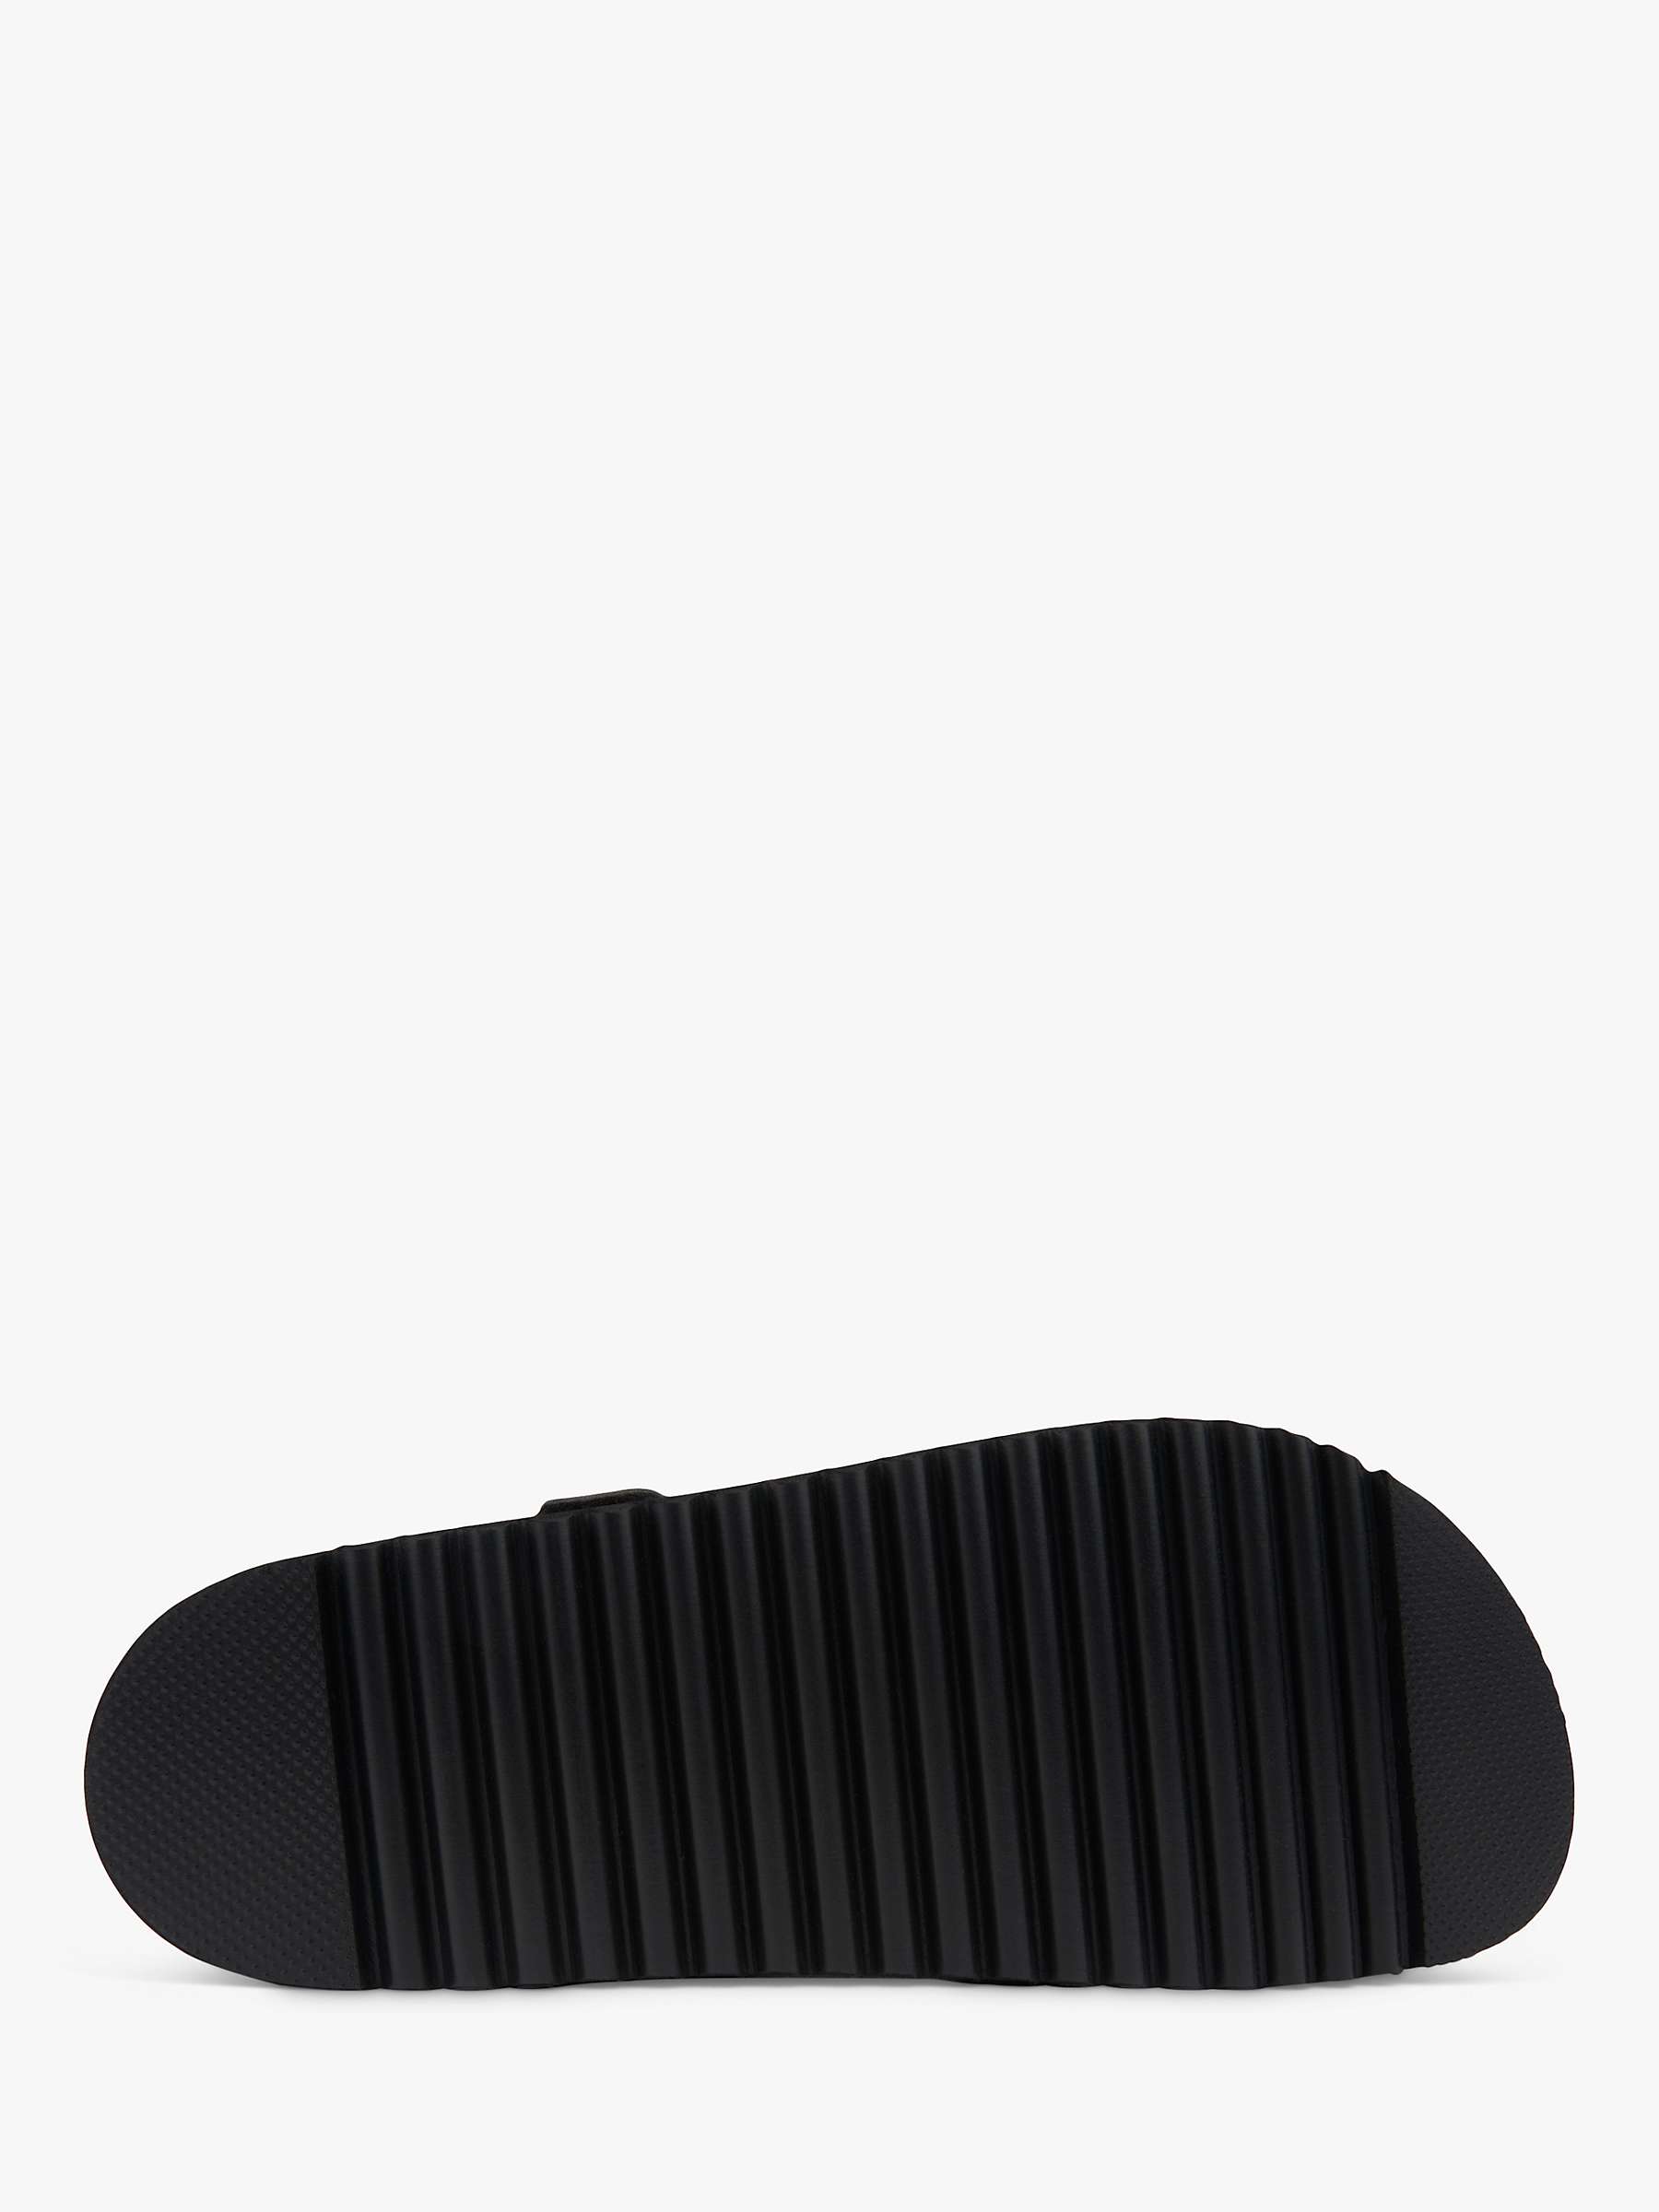 Buy V.GAN Vegan Clove 2 Footbed Sandals, Black Online at johnlewis.com